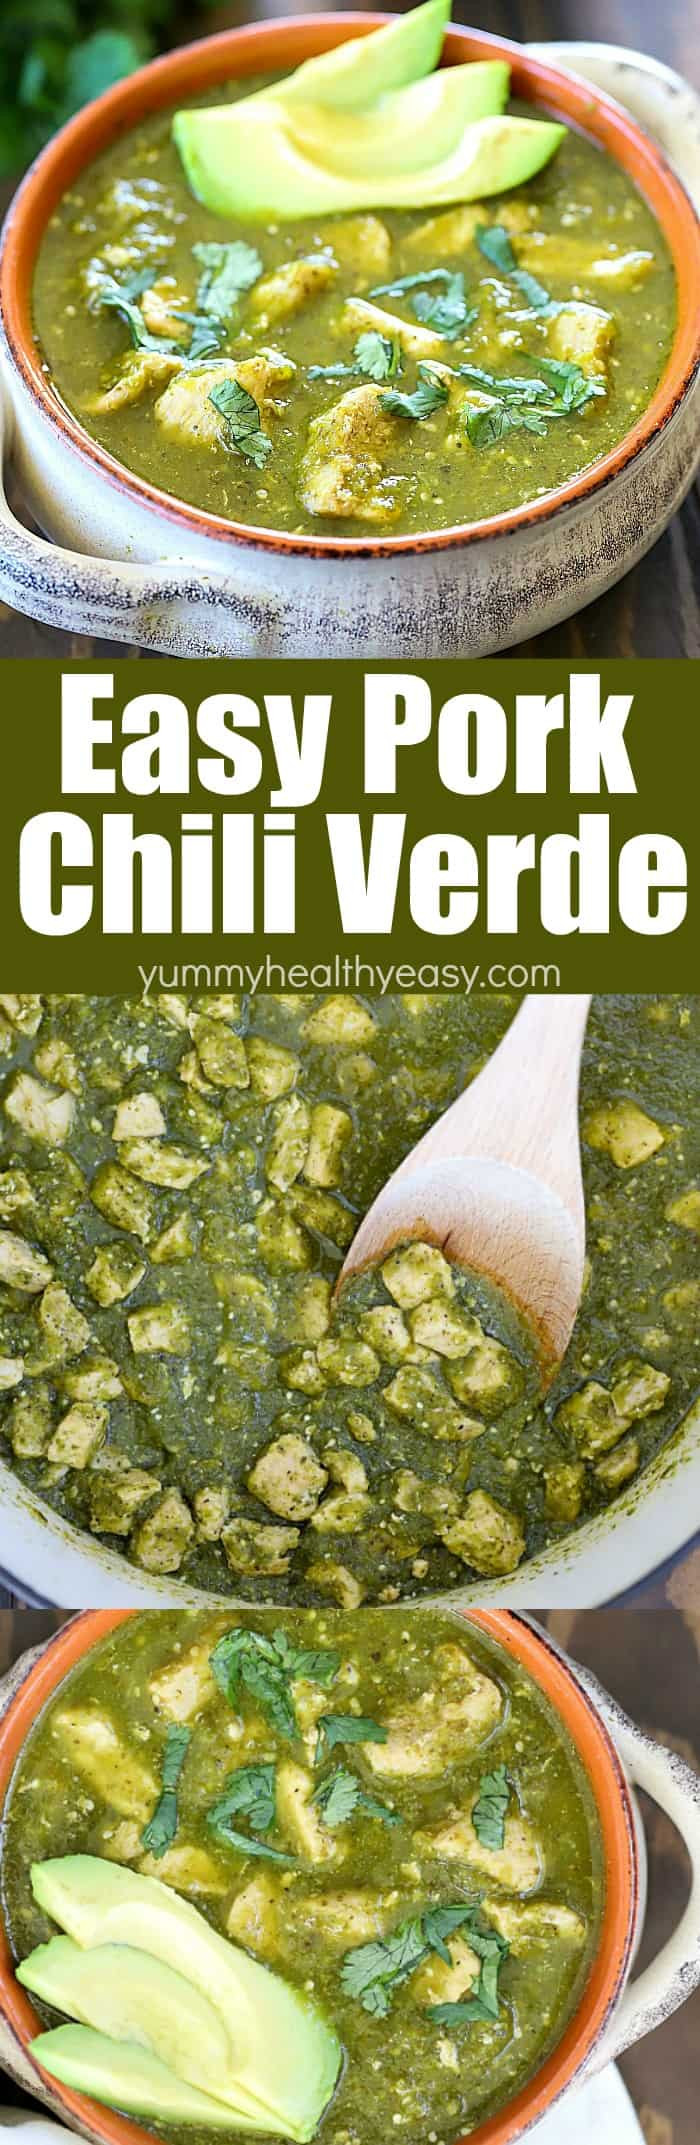 Chili Verde Pork Recipes
 Pork Chili Verde Recipe Pass the Pork Recap Yummy